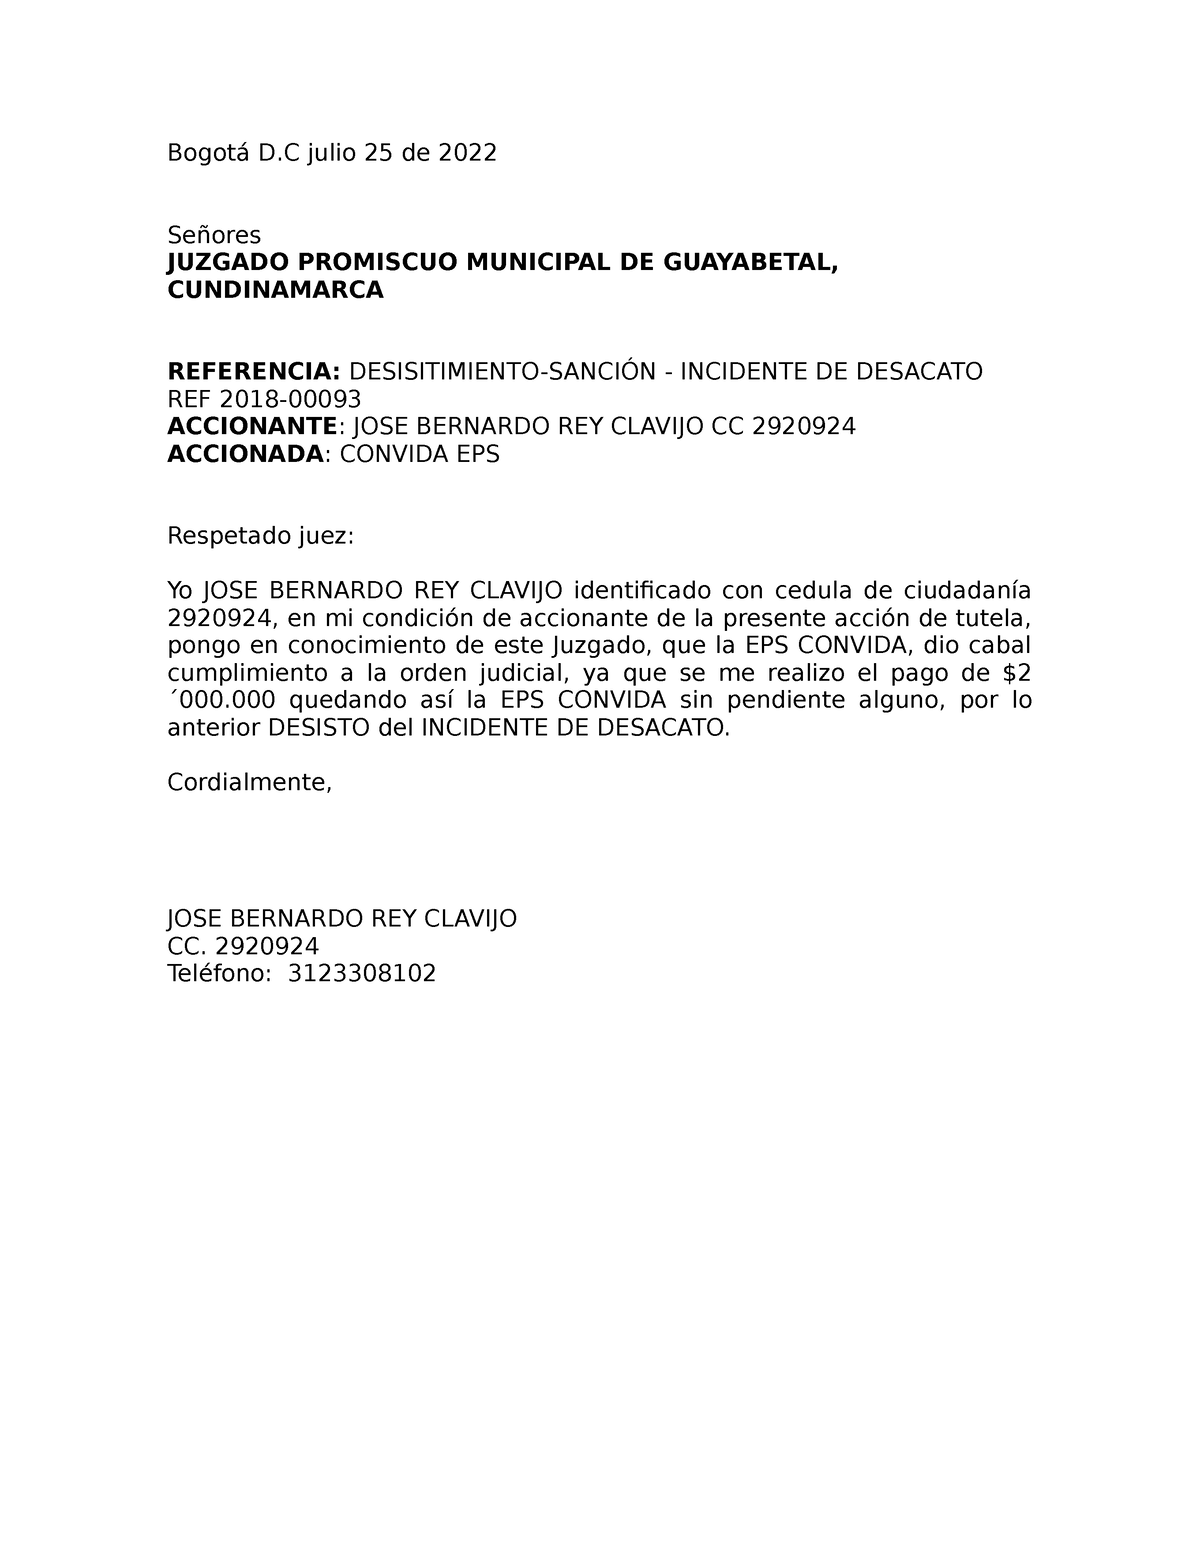 Desisitimiento - modelo desistimiento acción de tutela que ocasiona sanción  - Bogotá D julio 25 de - Studocu